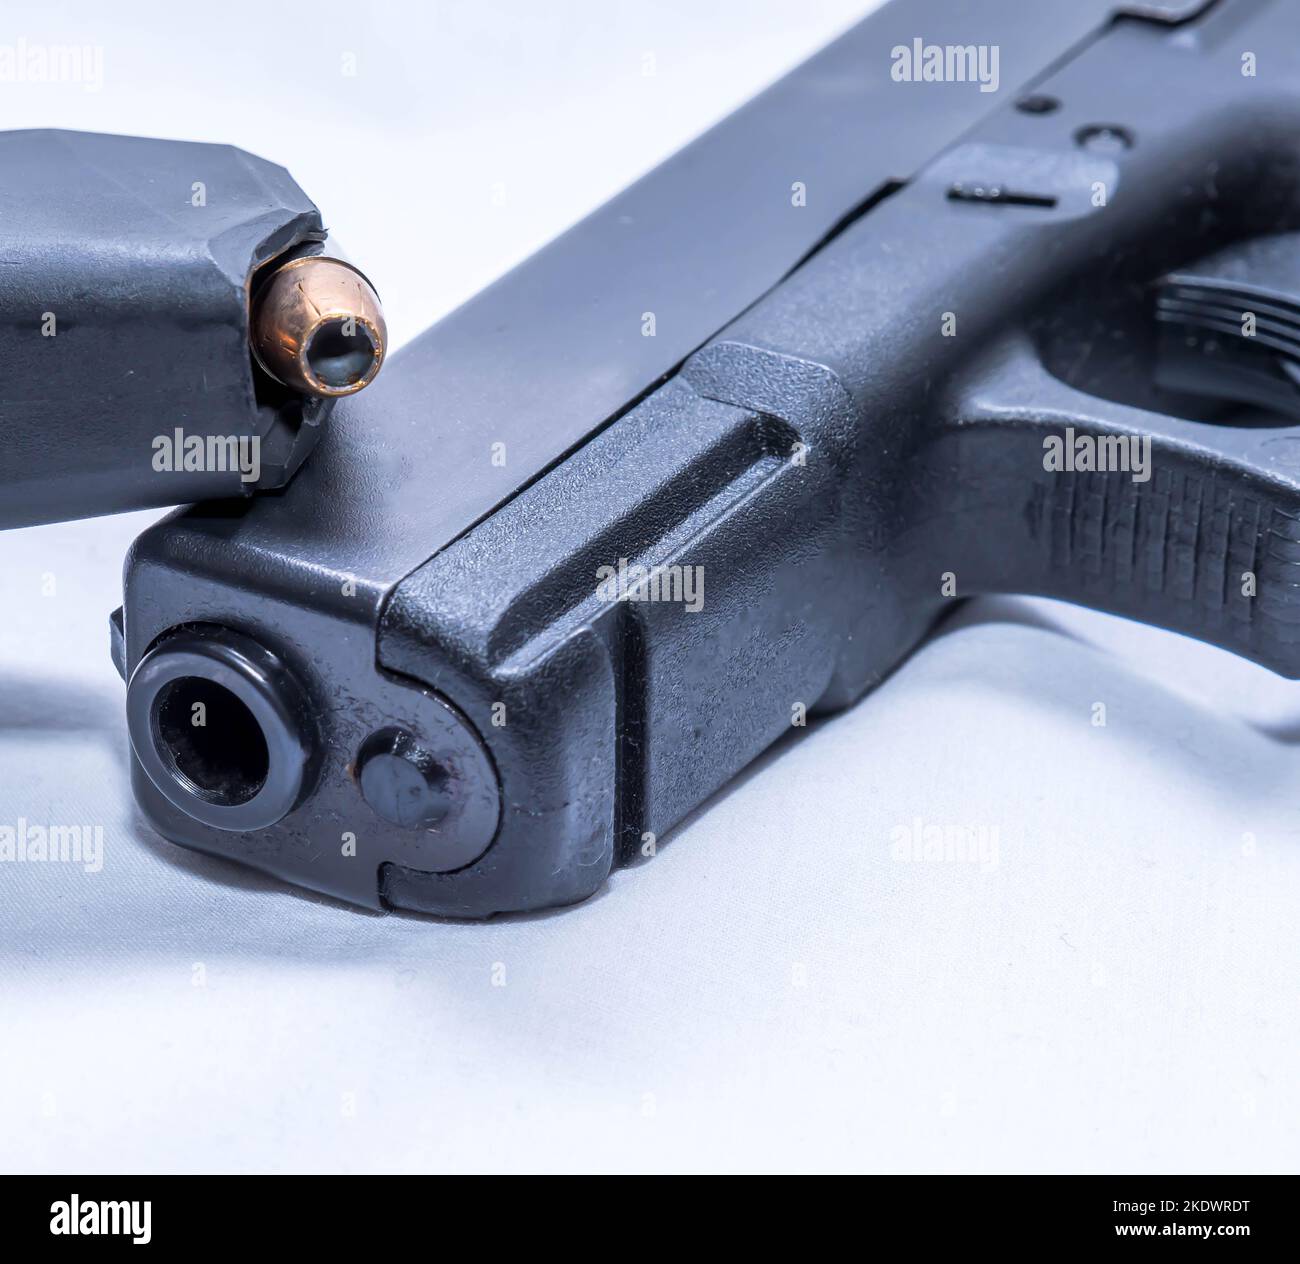 Eine Pistolenzeitschrift aus dem Jahr 9mm, die mit hohlen Punktekugeln auf einer schwarzen Pistole aus dem Jahr 9mm auf weißem Hintergrund bestückt ist Stockfoto